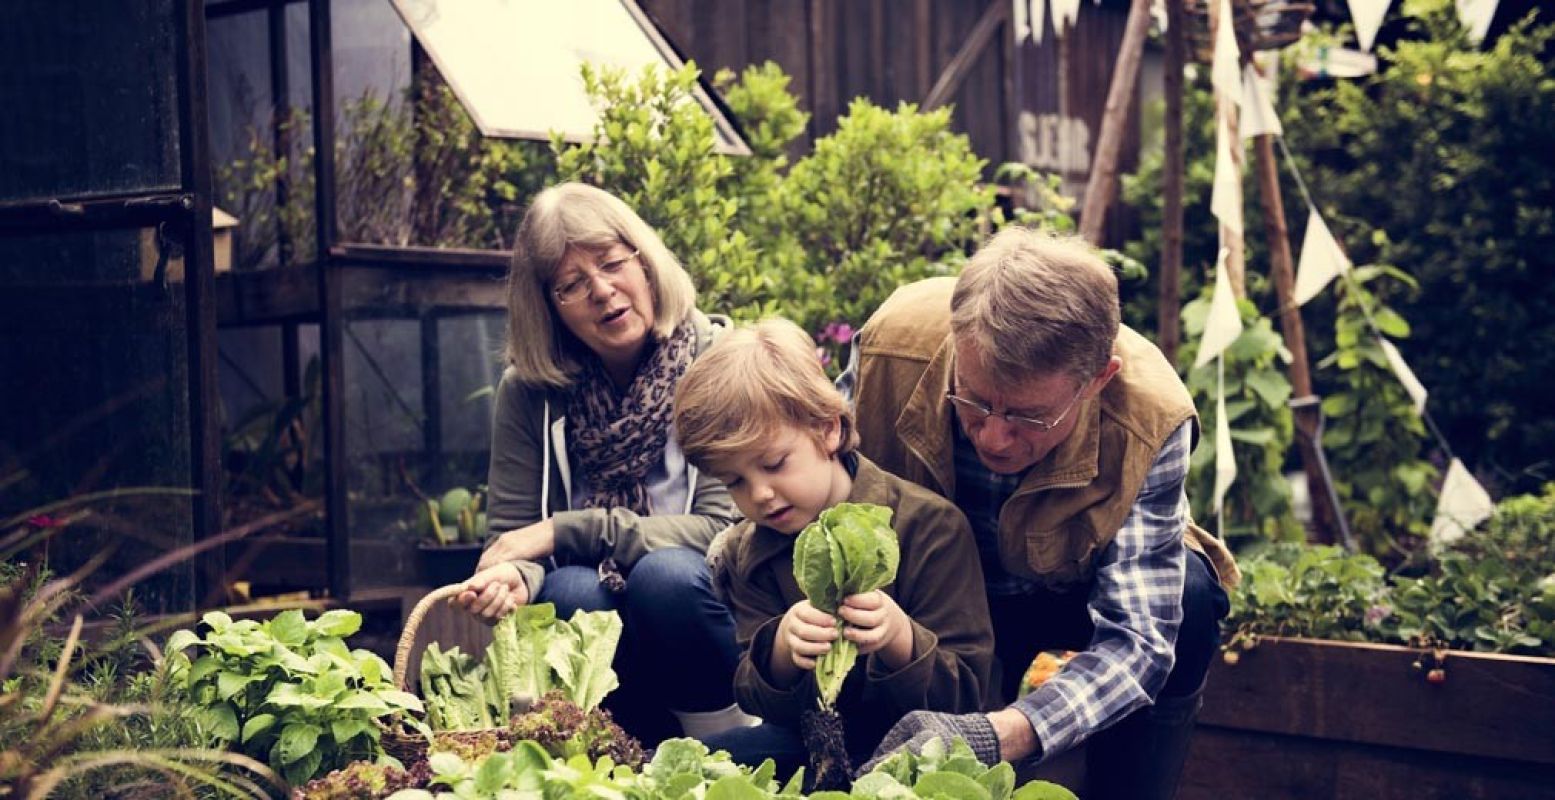 Leer hoe je moet tuinieren. Foto: Stadstuinenfestival Almere